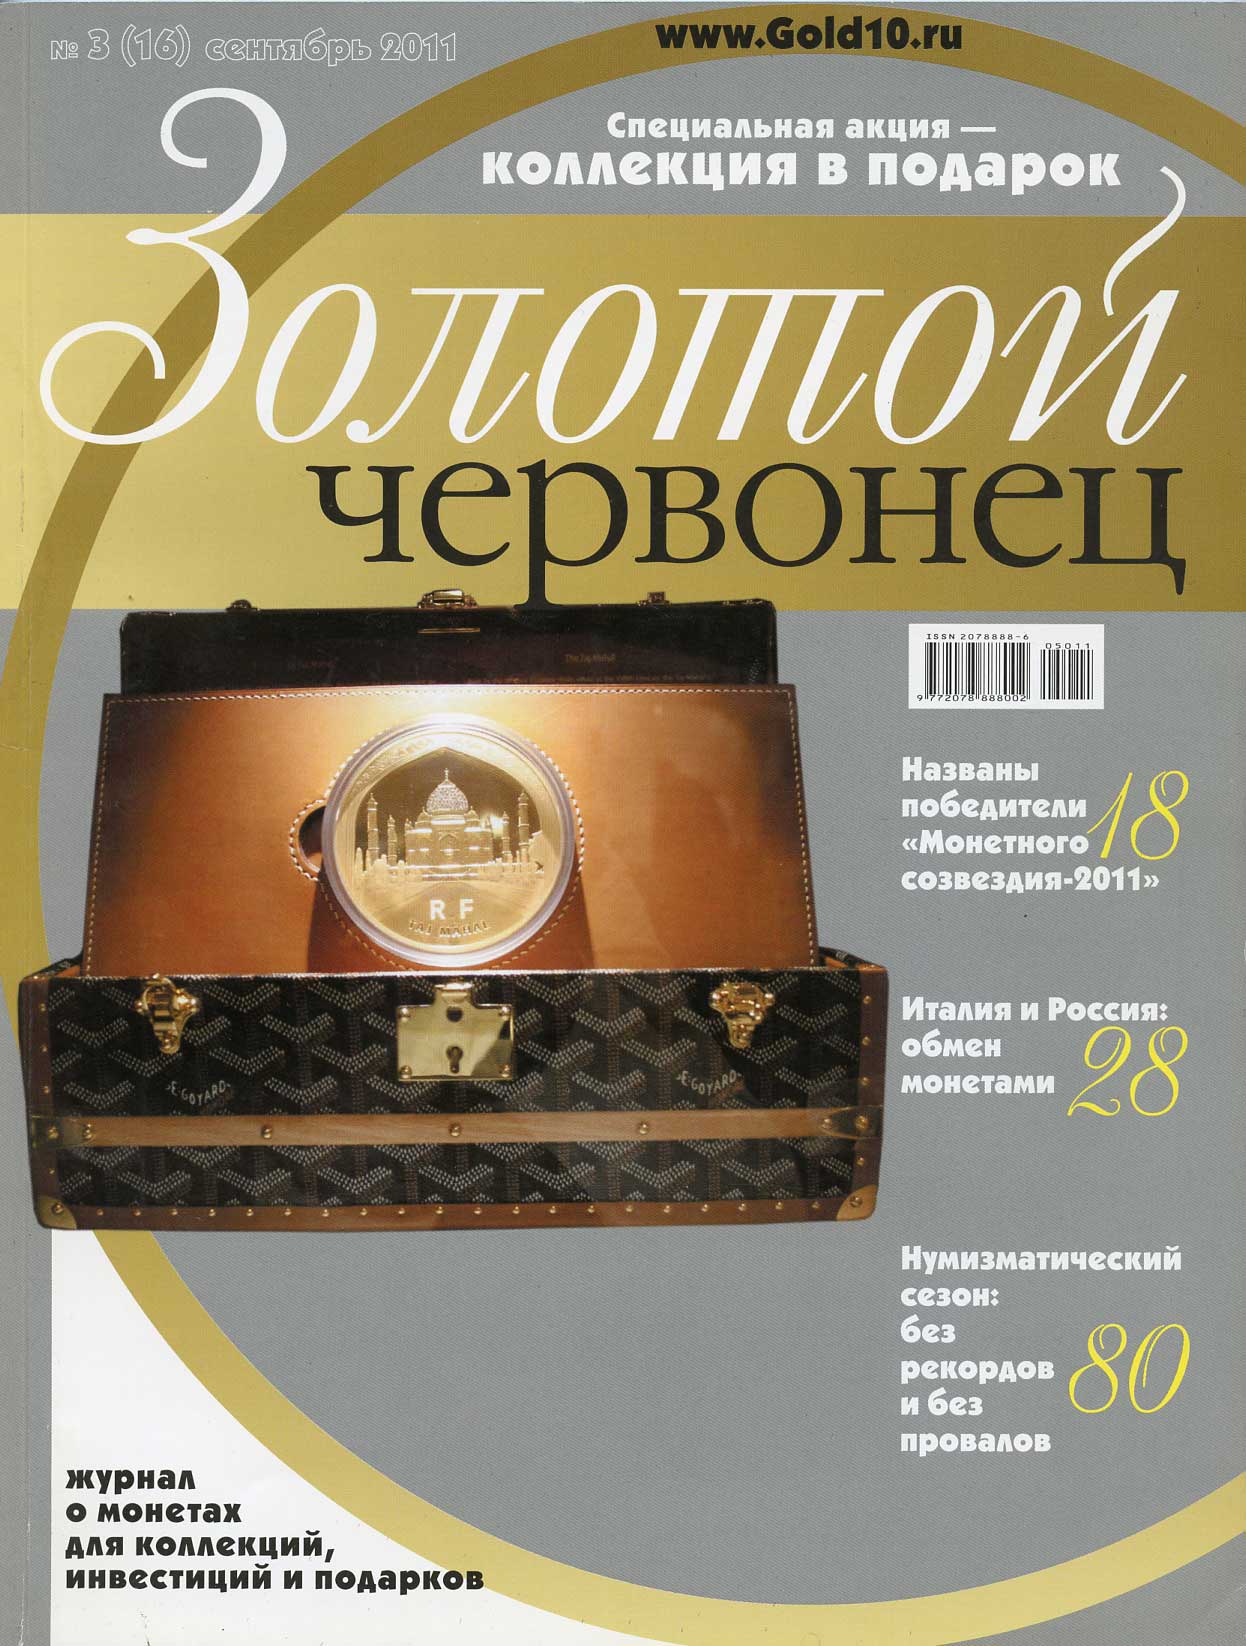 Журнал Золотой червонец № 3 (16) сентябрь 2011 00-01-13-23: цены, купить внумизматическом магазине «Рашенкойн»